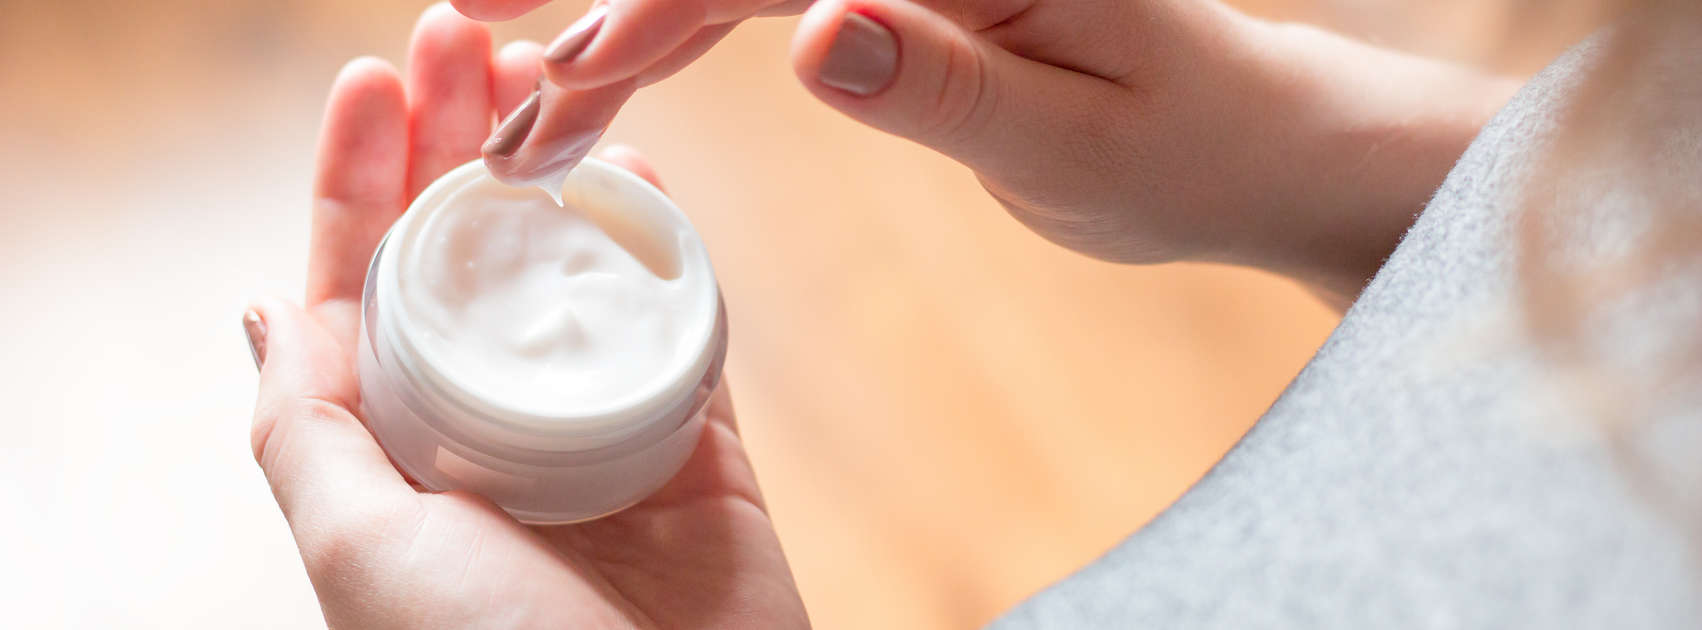 jonge vrouw maakt gebruik van lichaamsverzorging crème